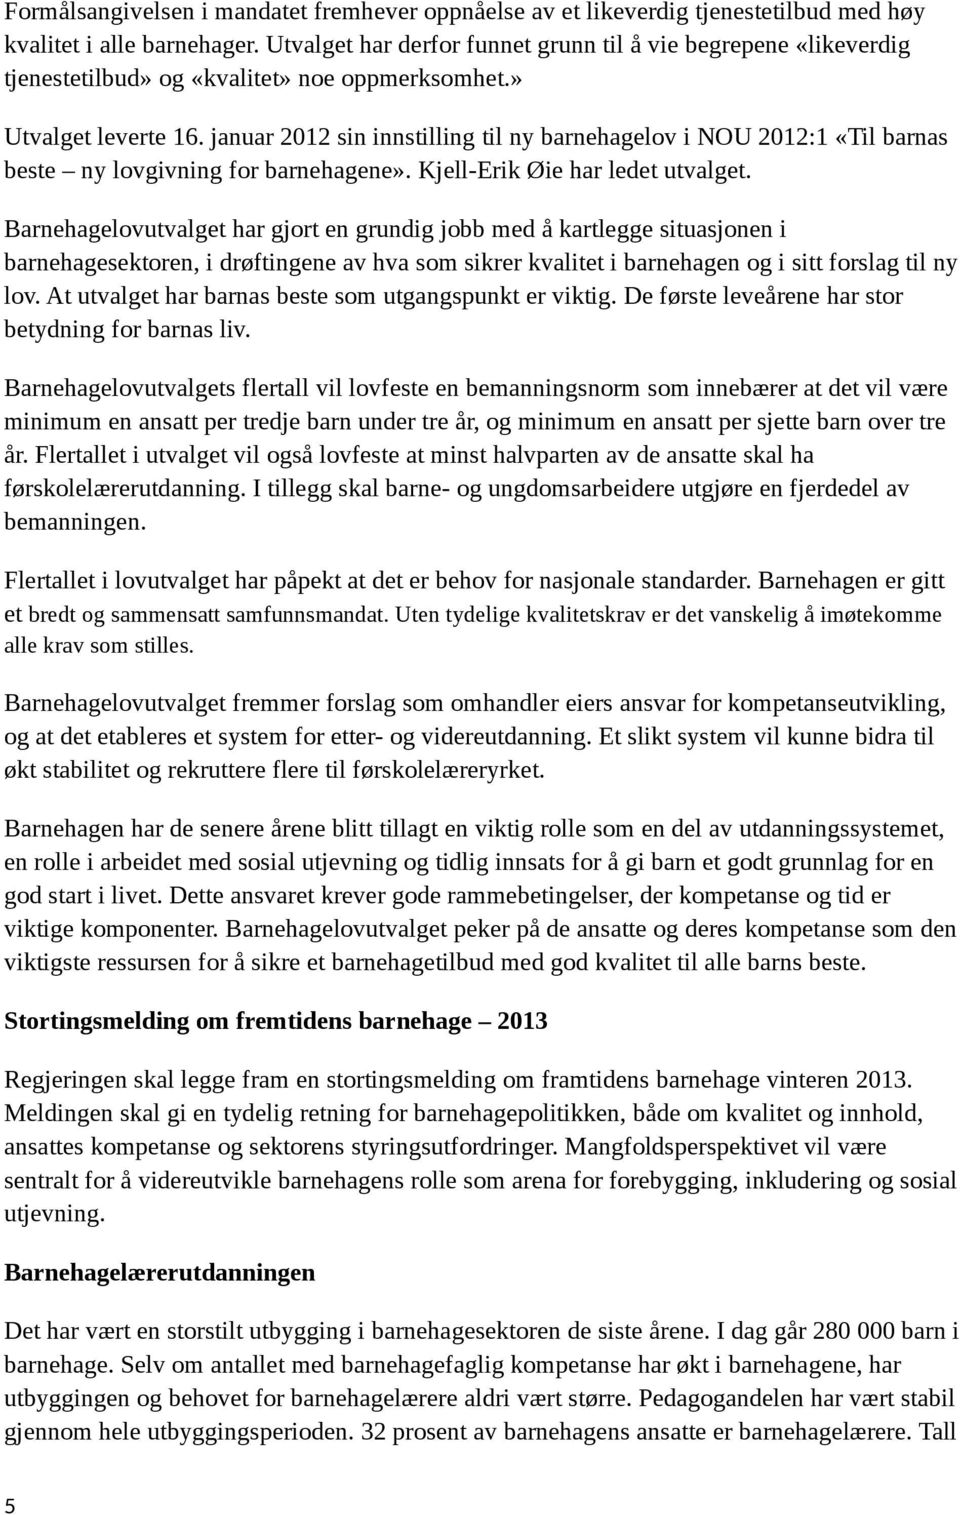 januar 2012 sin innstilling til ny barnehagelov i NOU 2012:1 «Til barnas beste ny lovgivning for barnehagene». Kjell-Erik Øie har ledet utvalget.